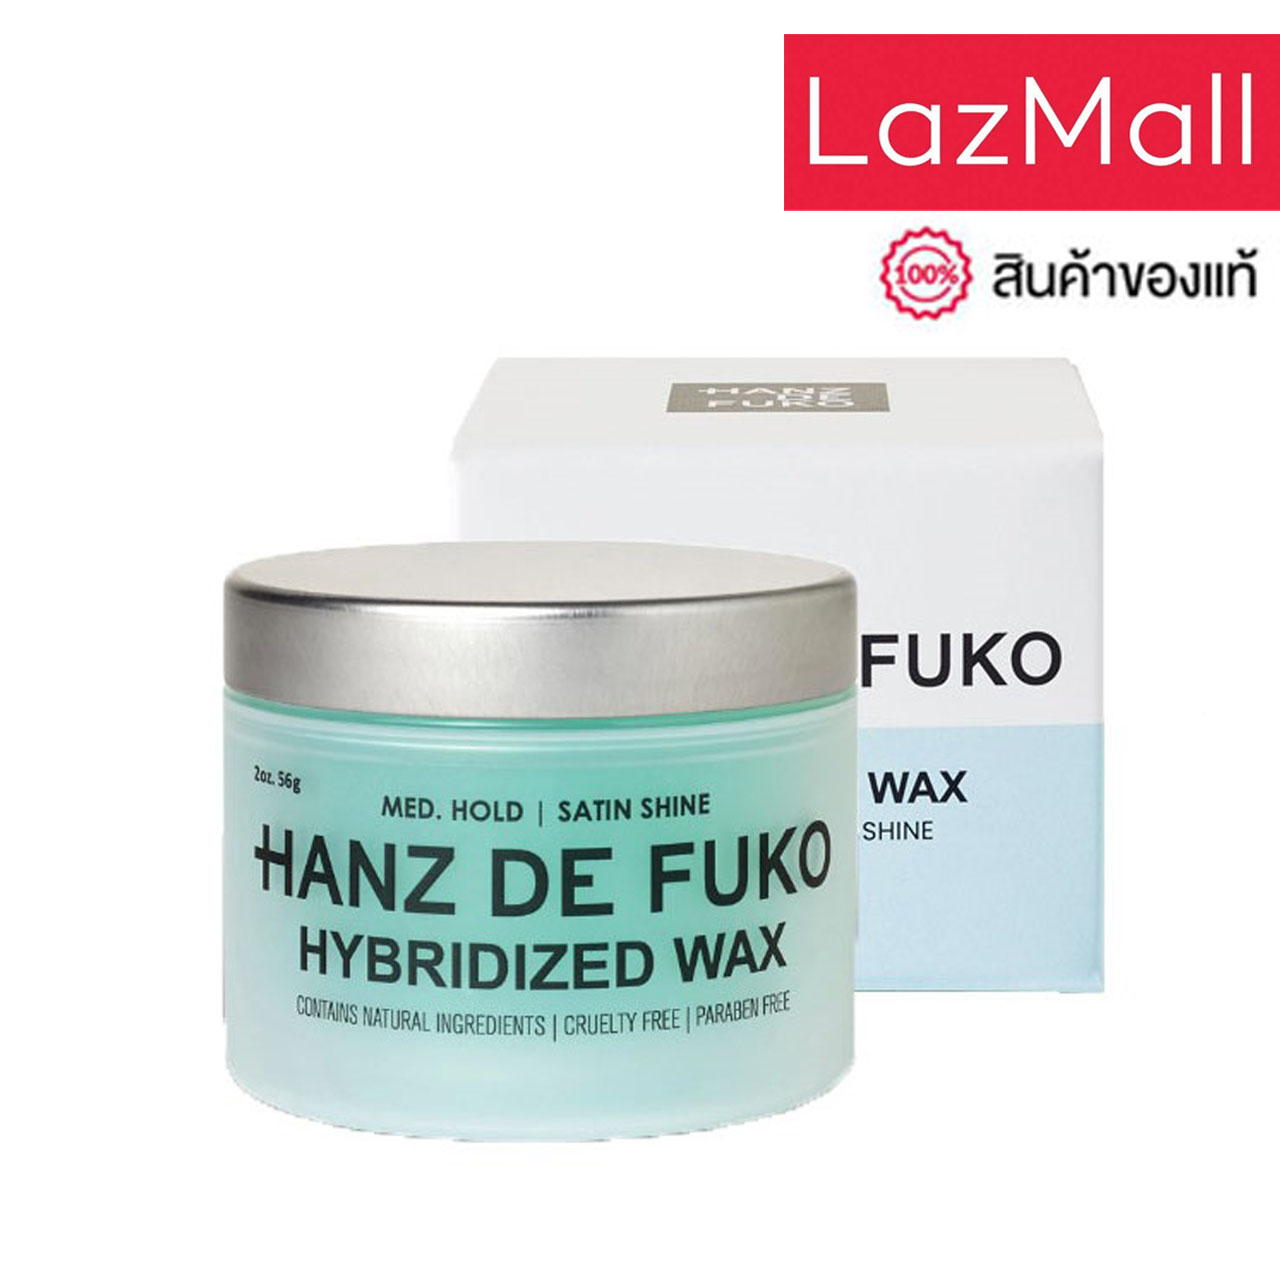 ราคา Hanz de Fuko - Hybridized Wax (2oz. | 56 ml.) )ผลิตภัณฑ์เซ็ตผมส่วนผสมจากธรรมชาติ